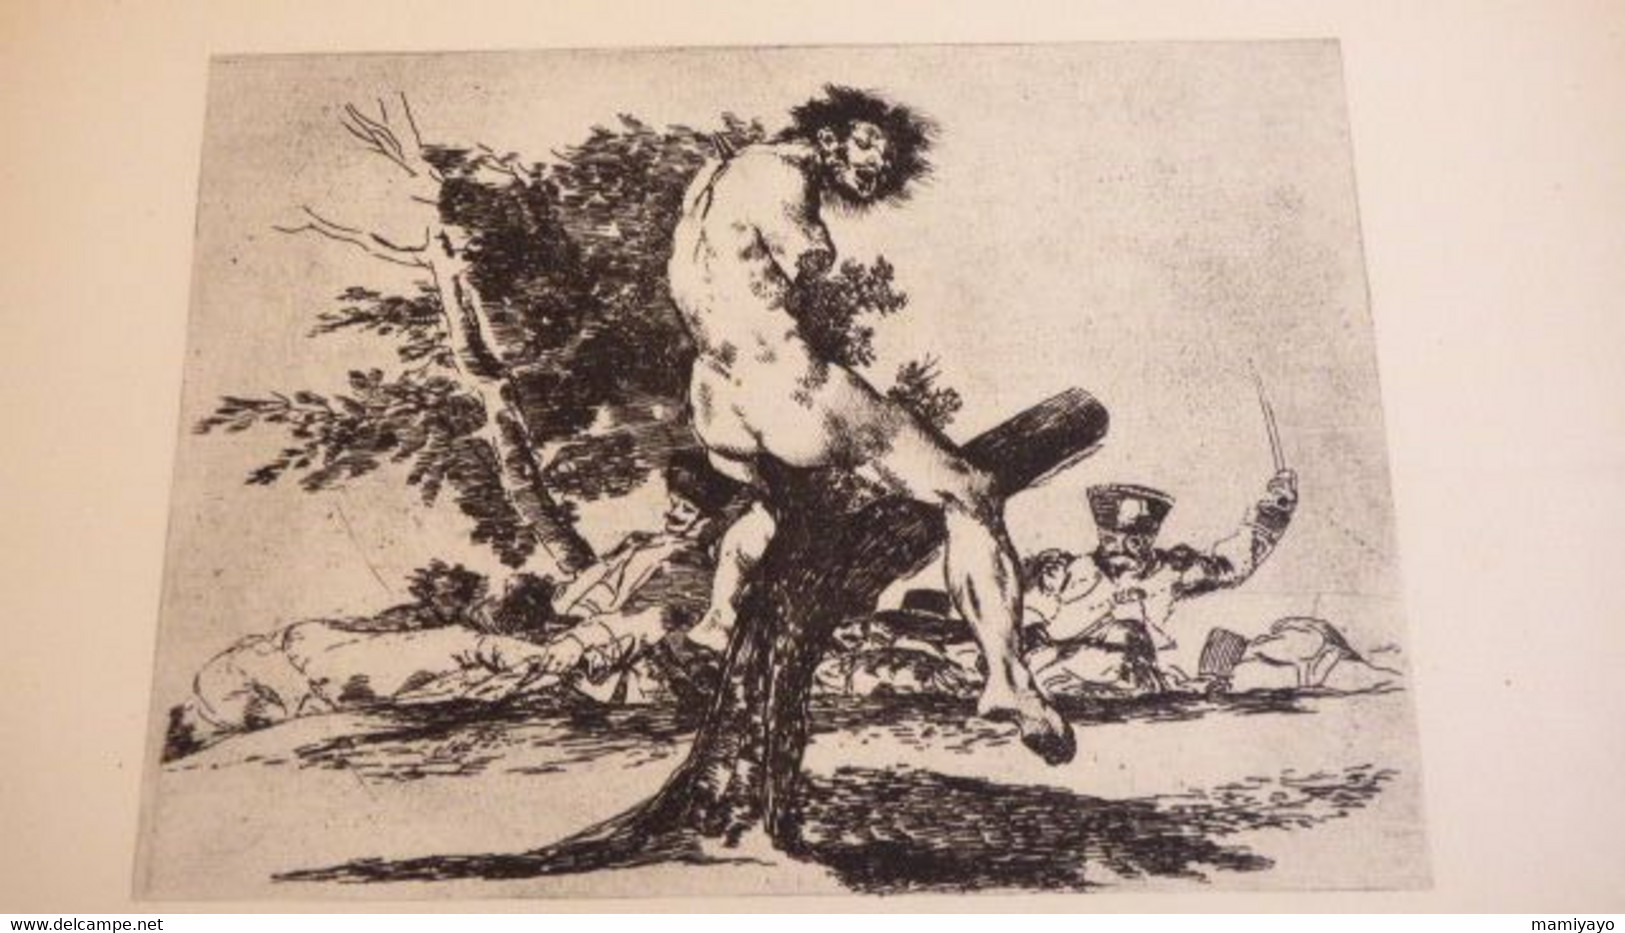 2 livres sur GOYA *DAS GRAUEN DES KRIEGES * Gravures /Guerre- Espagne et Goya & Nizon.